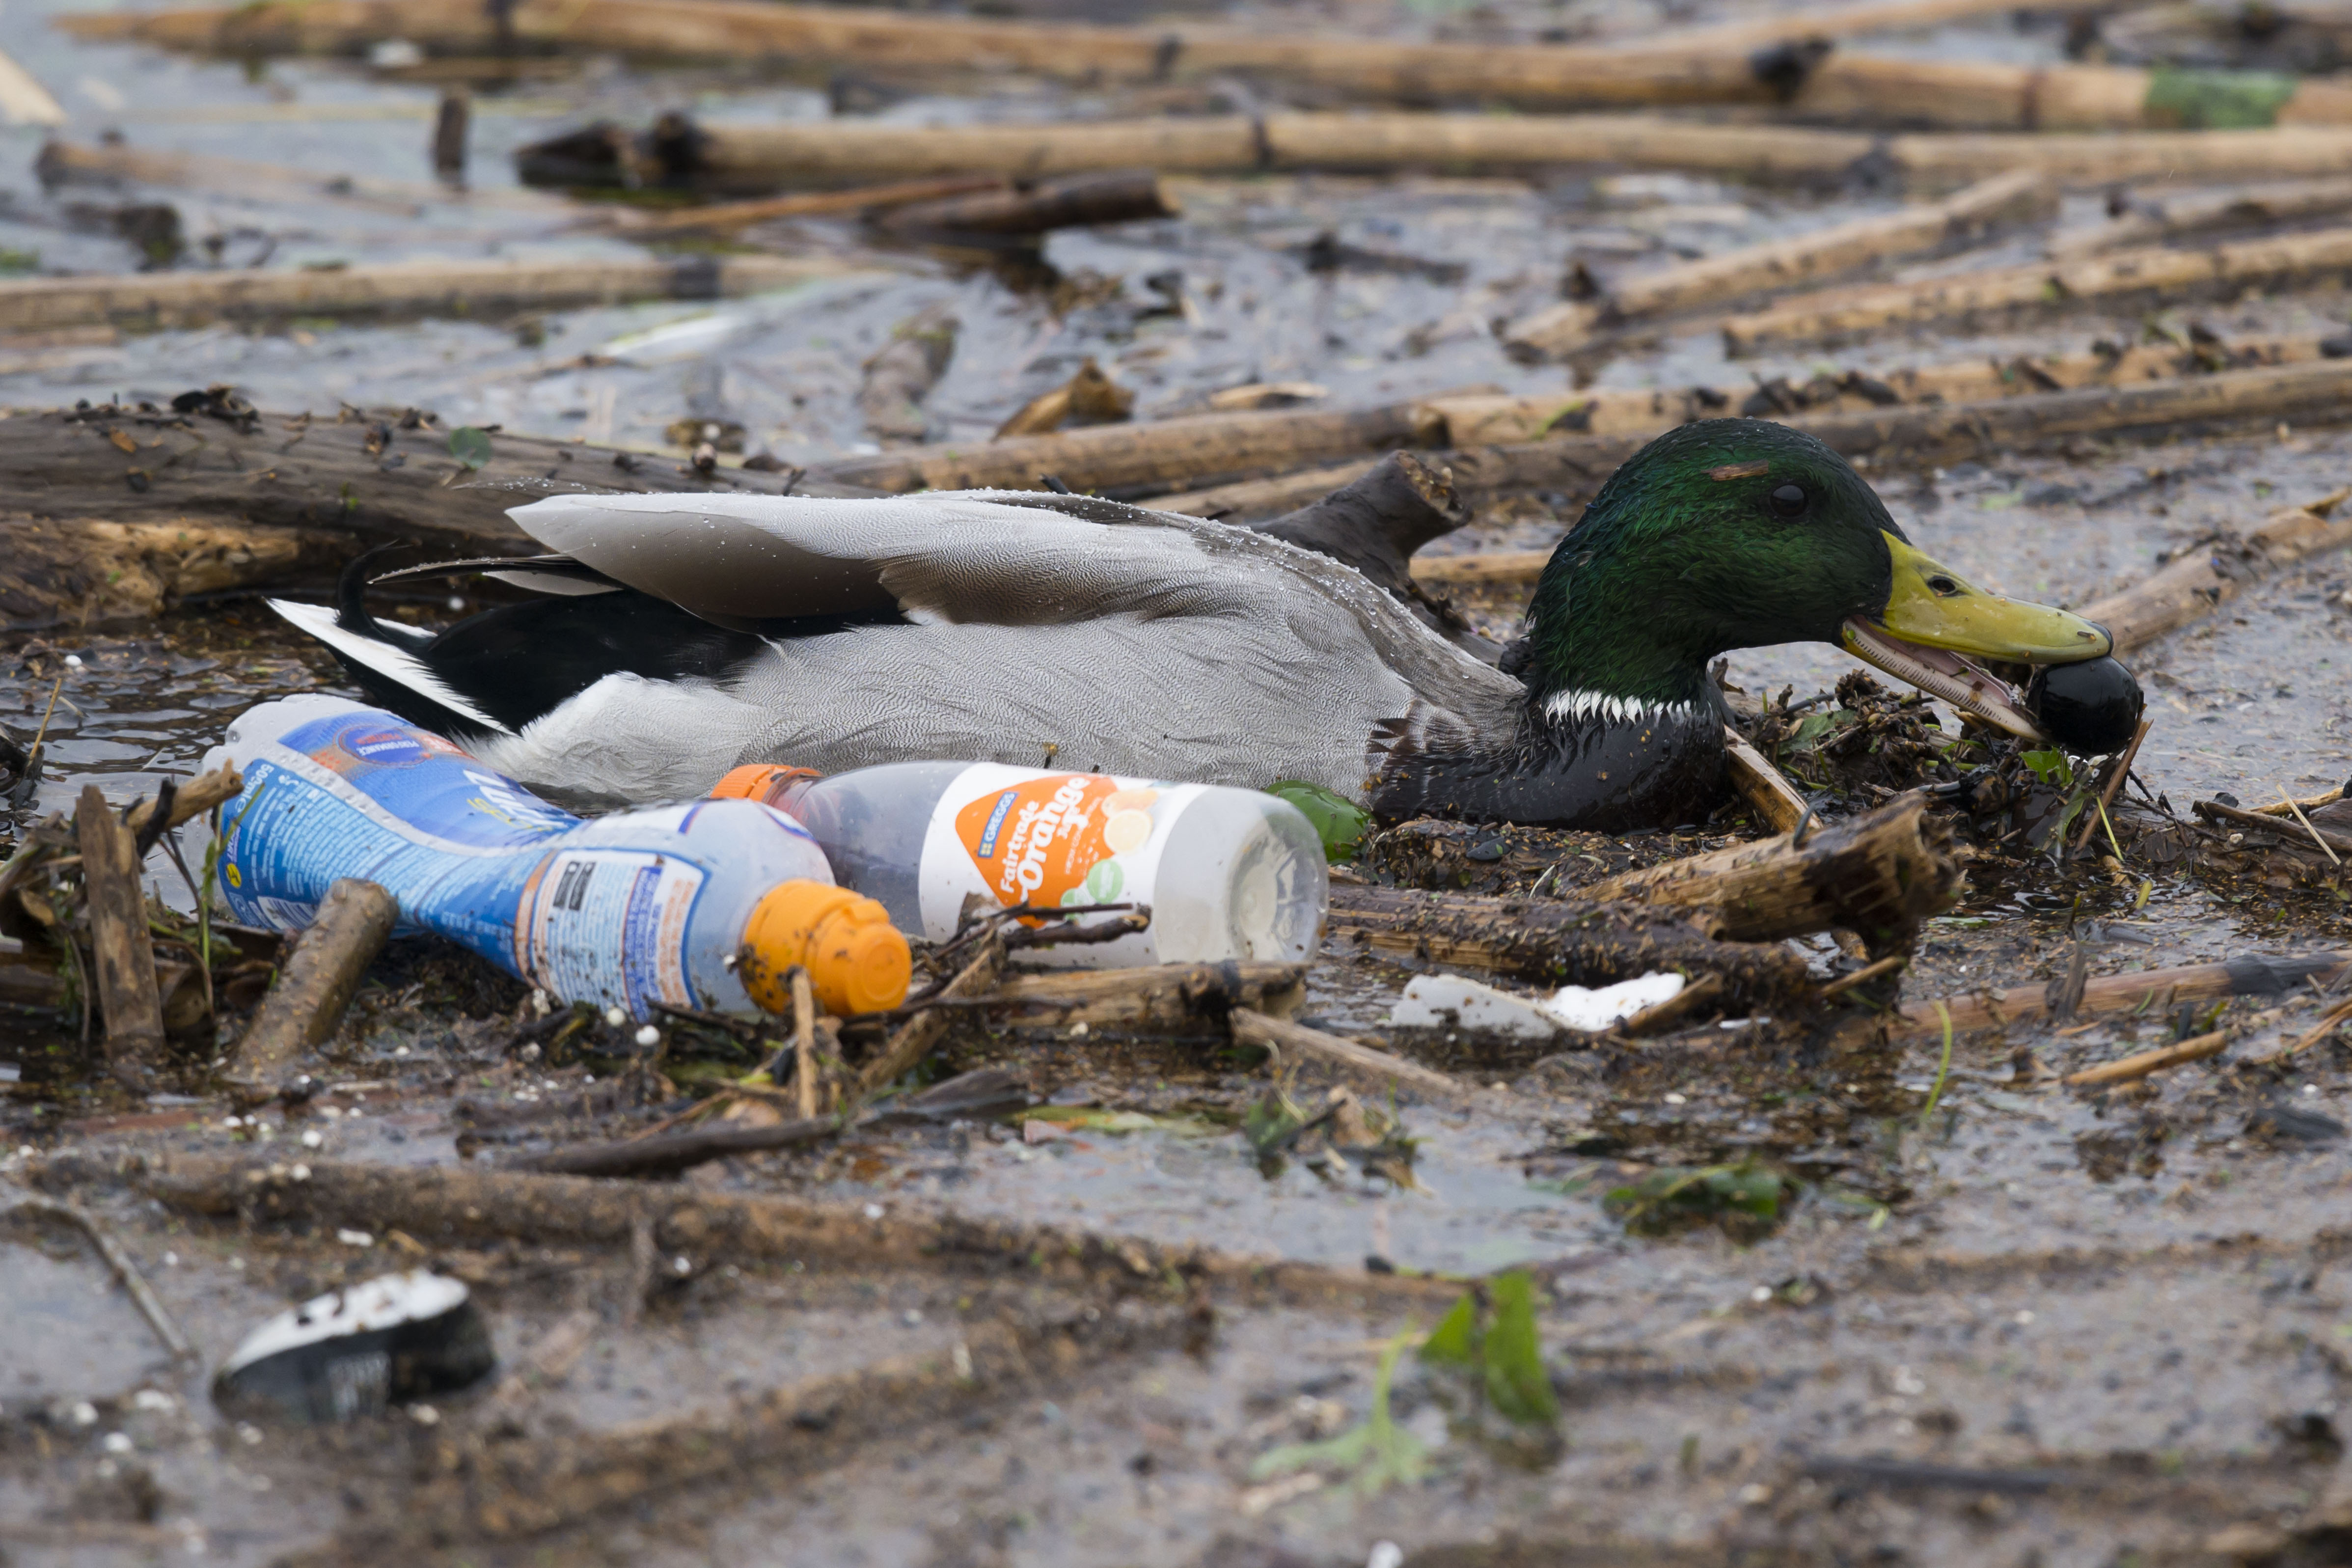 Estragos de la contaminación: Graban cómo una serpiente vomita una botella de plástico en la India